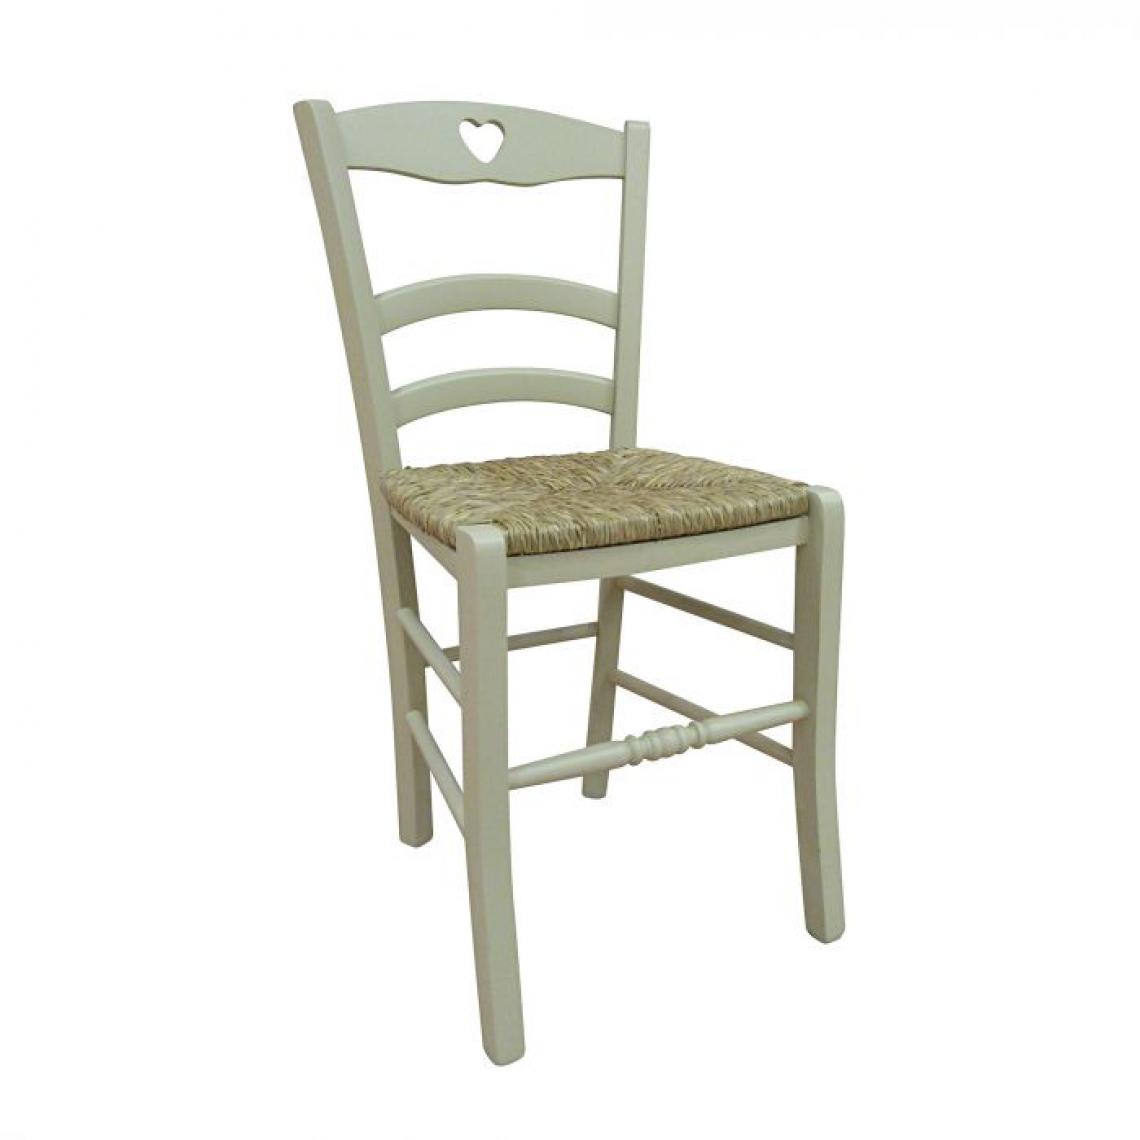 Alter - Chaise classique en bois avec détail coeur, Made in Italy, 45 x 47 x 88 cm, couleur sable, avec fond en paille - Chaises